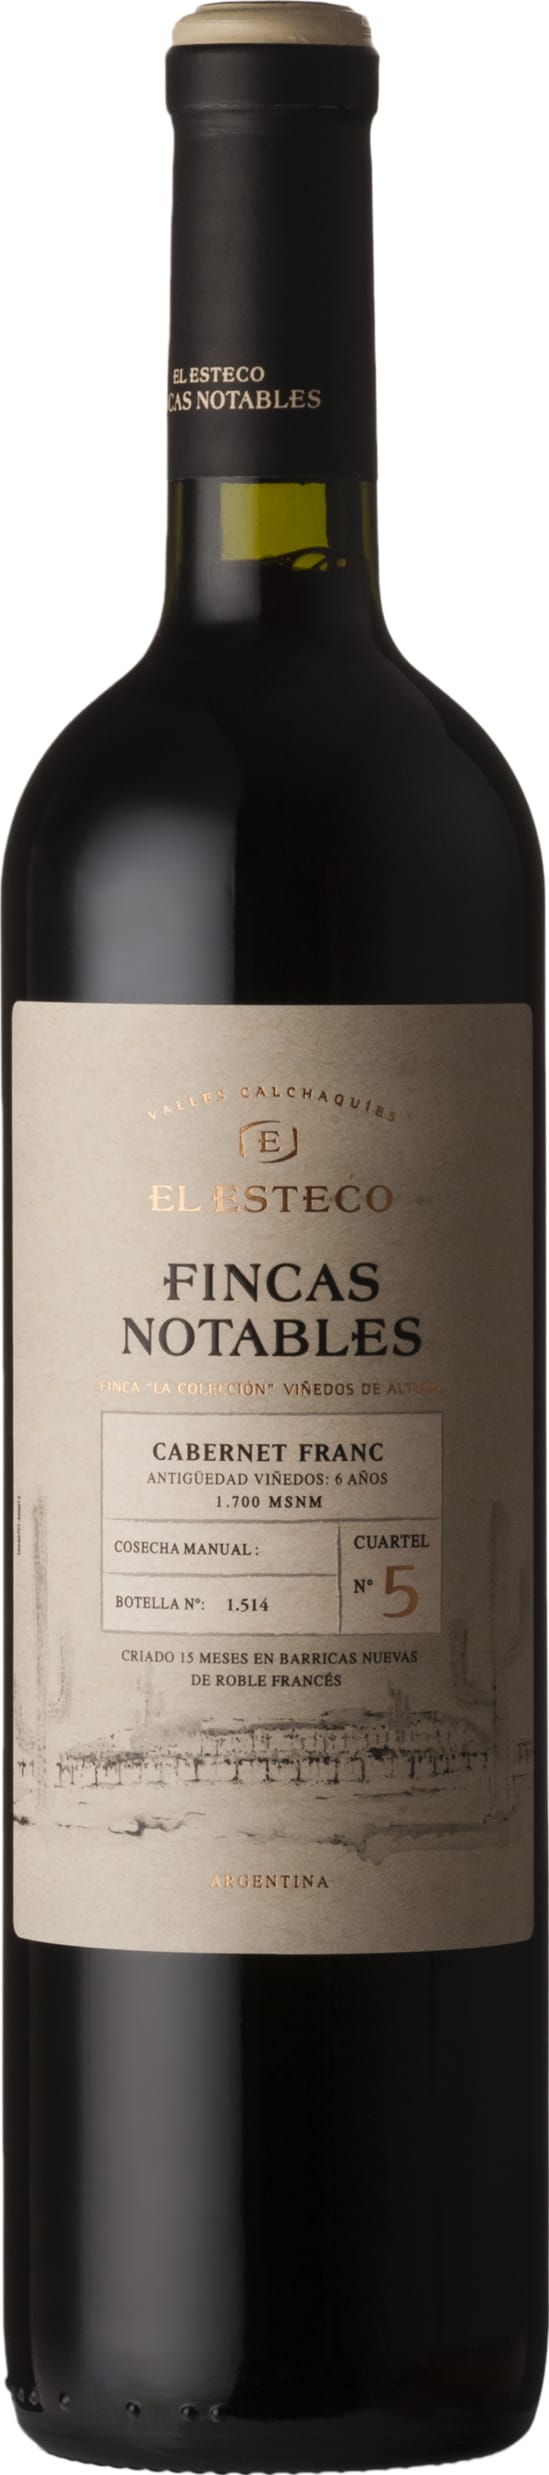 El Esteco Finca Notables Cabernet Franc 2020 75cl - Buy El Esteco Wines from GREAT WINES DIRECT wine shop